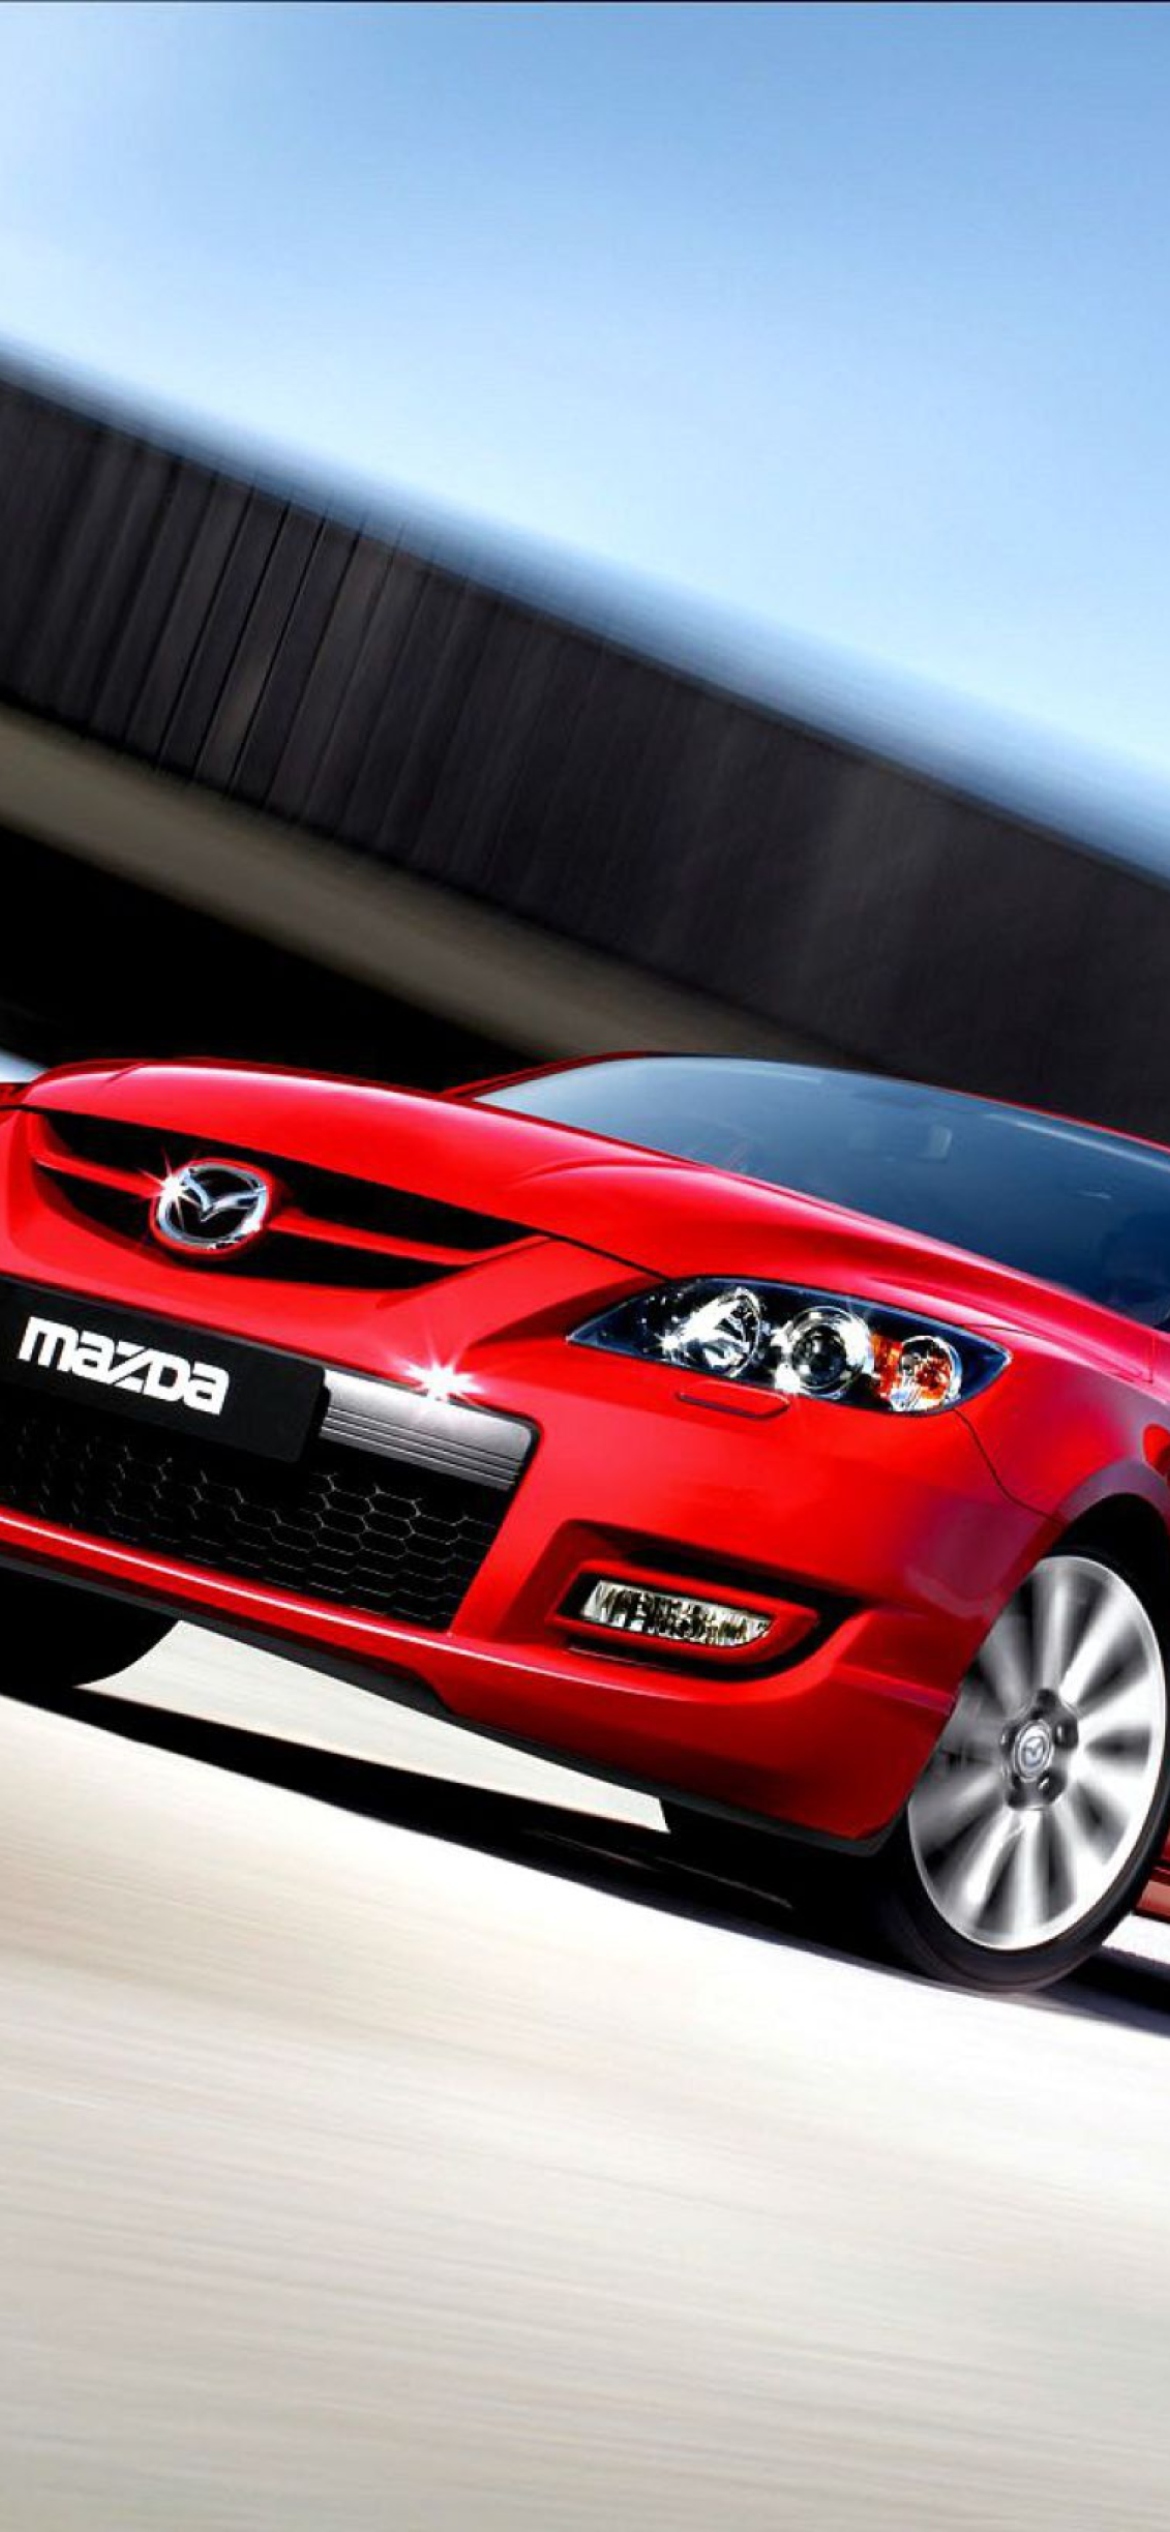 Fondo de pantalla Mazda 3 Mps 1170x2532